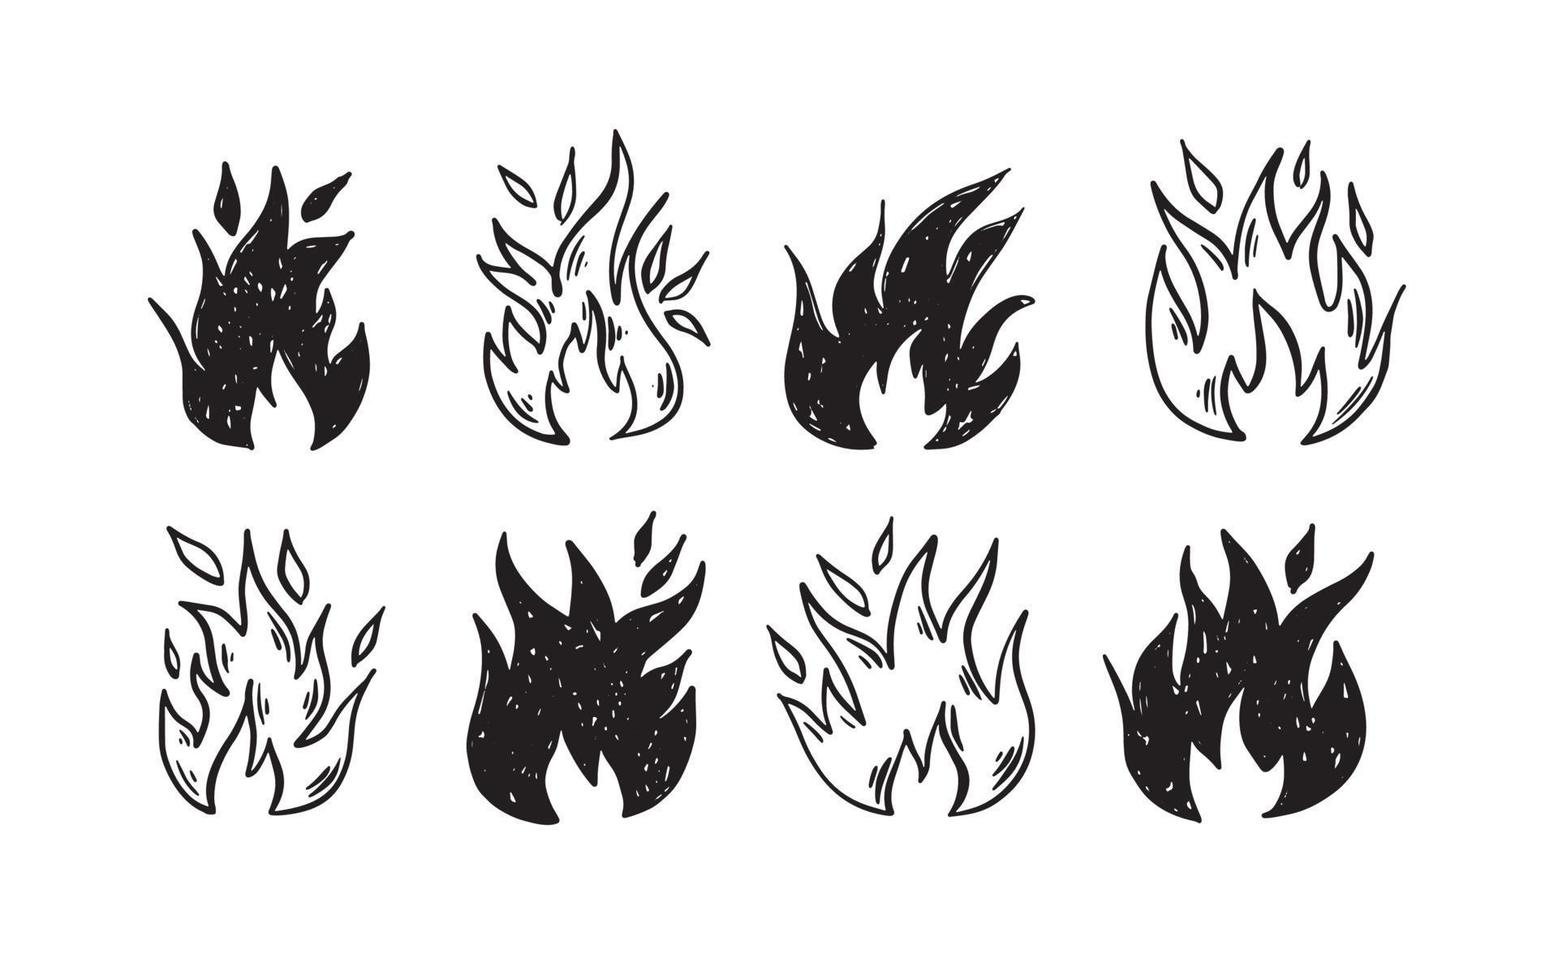 juego de hoguera, ilustración dibujada a mano, llama, quema. vector